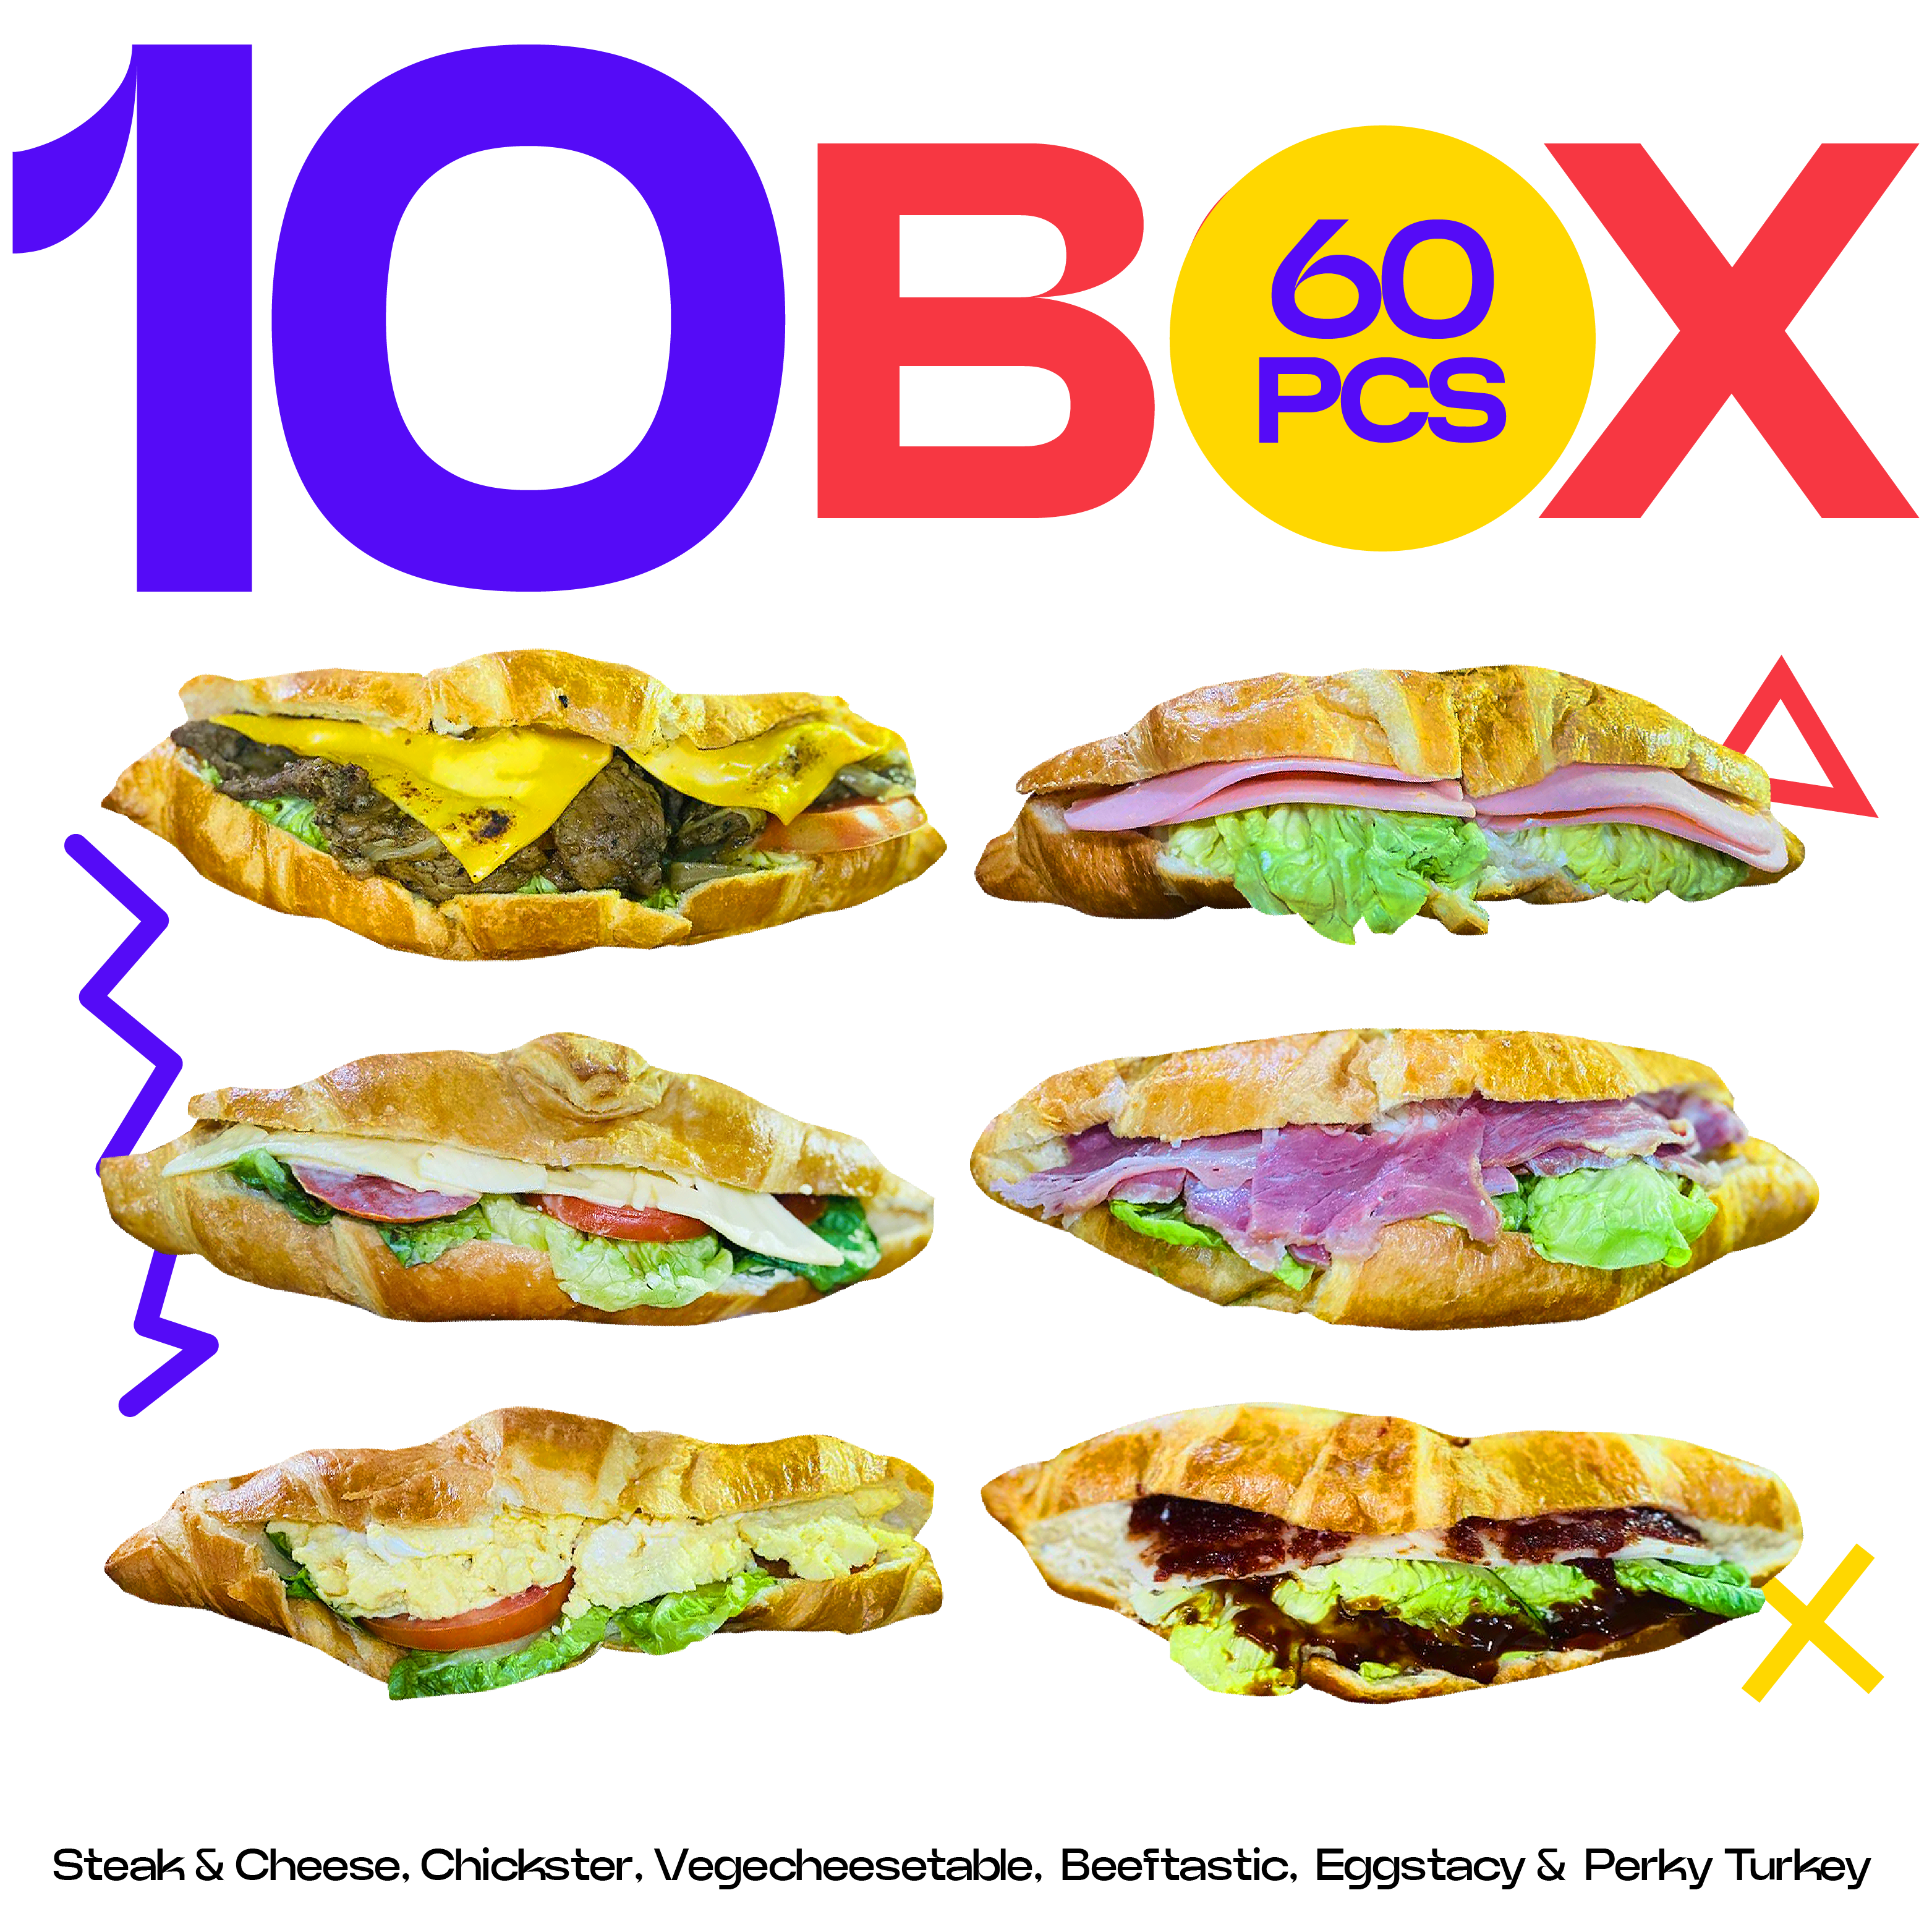 Mini Croissant (Mix) - 10 box (60pcs)